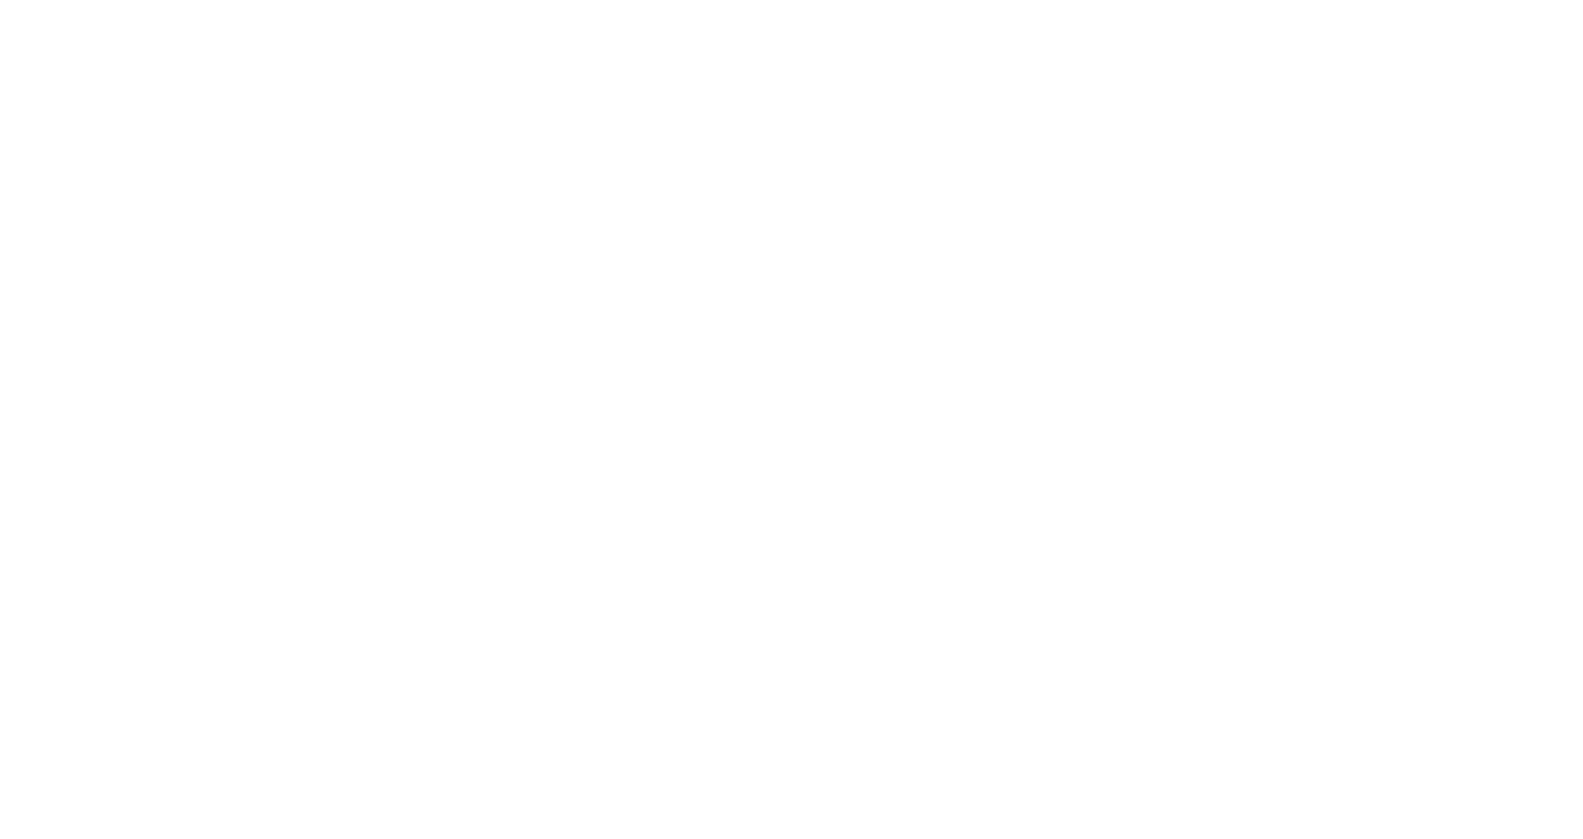 Shepherd Loves Local